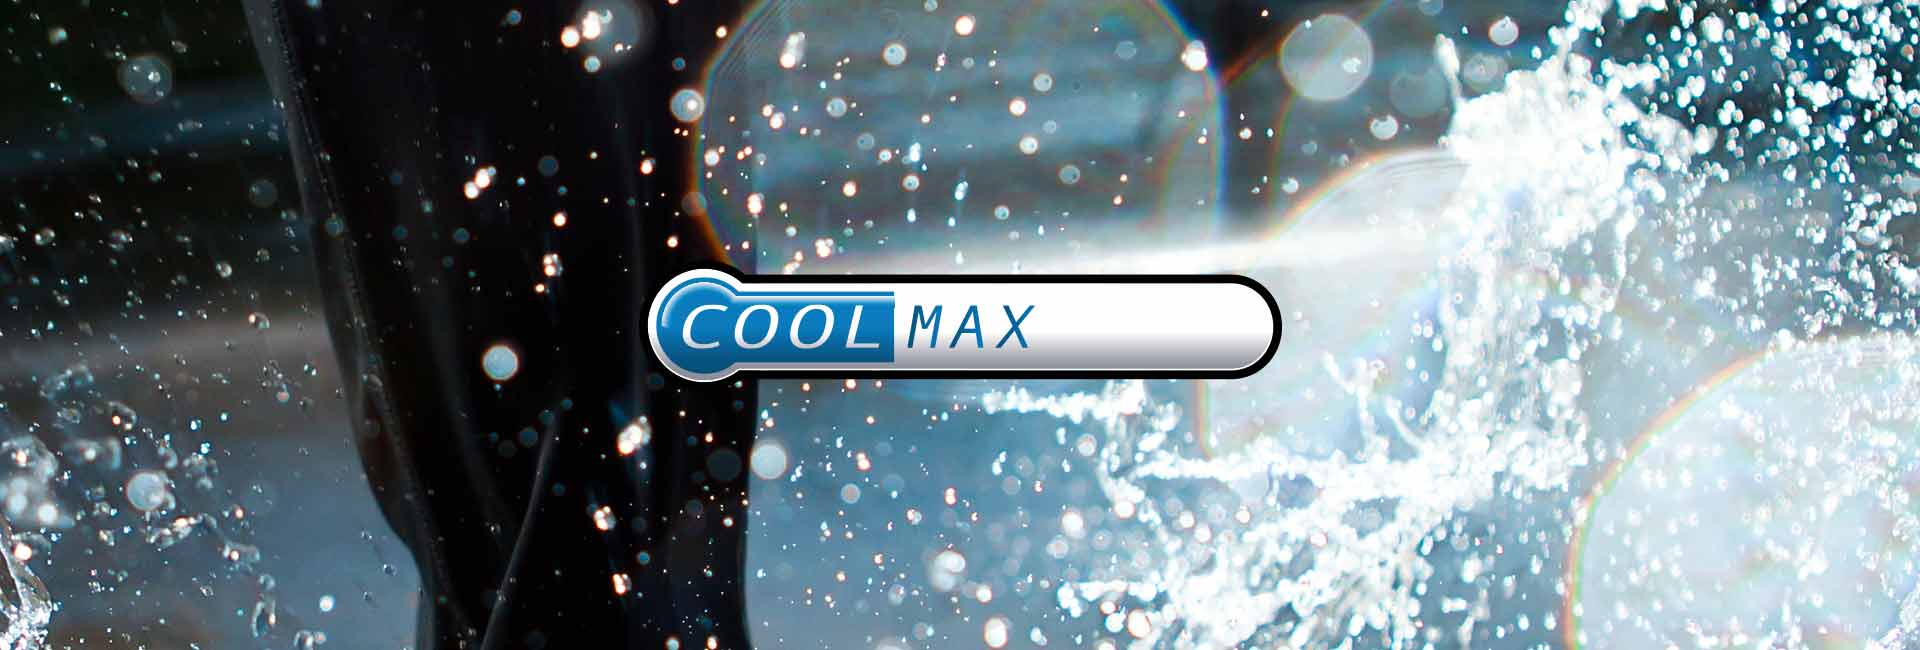 Coolmax è la tecnologia U-Power che tiene il sudore lontano dal corpo